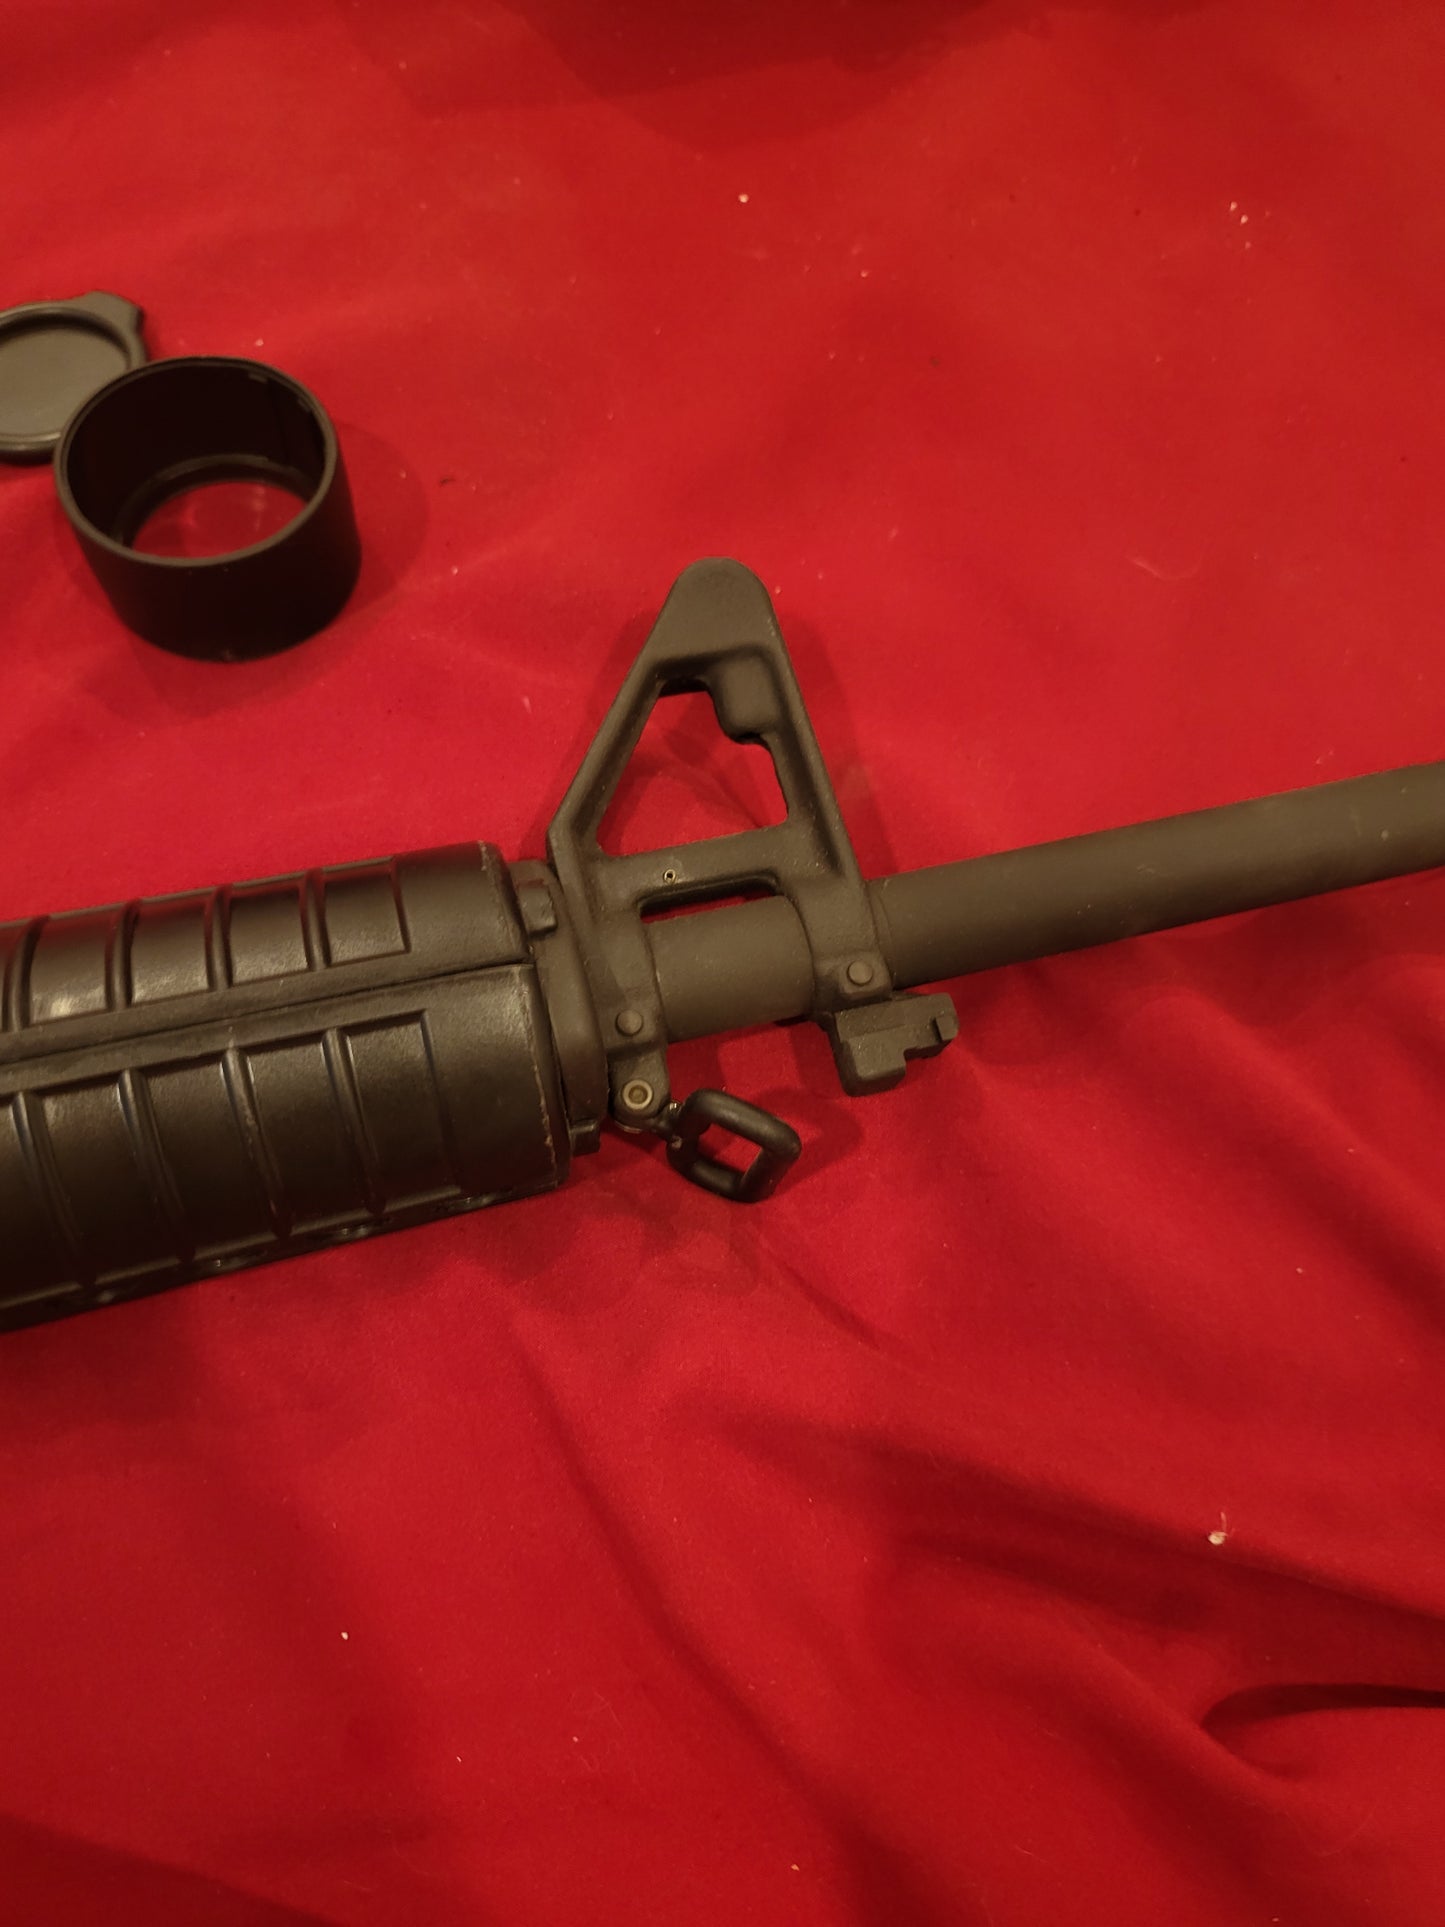 Bushmaster XM15 AR15 rifle 30RND one mag W UOQ 4-16x50 Scope Used